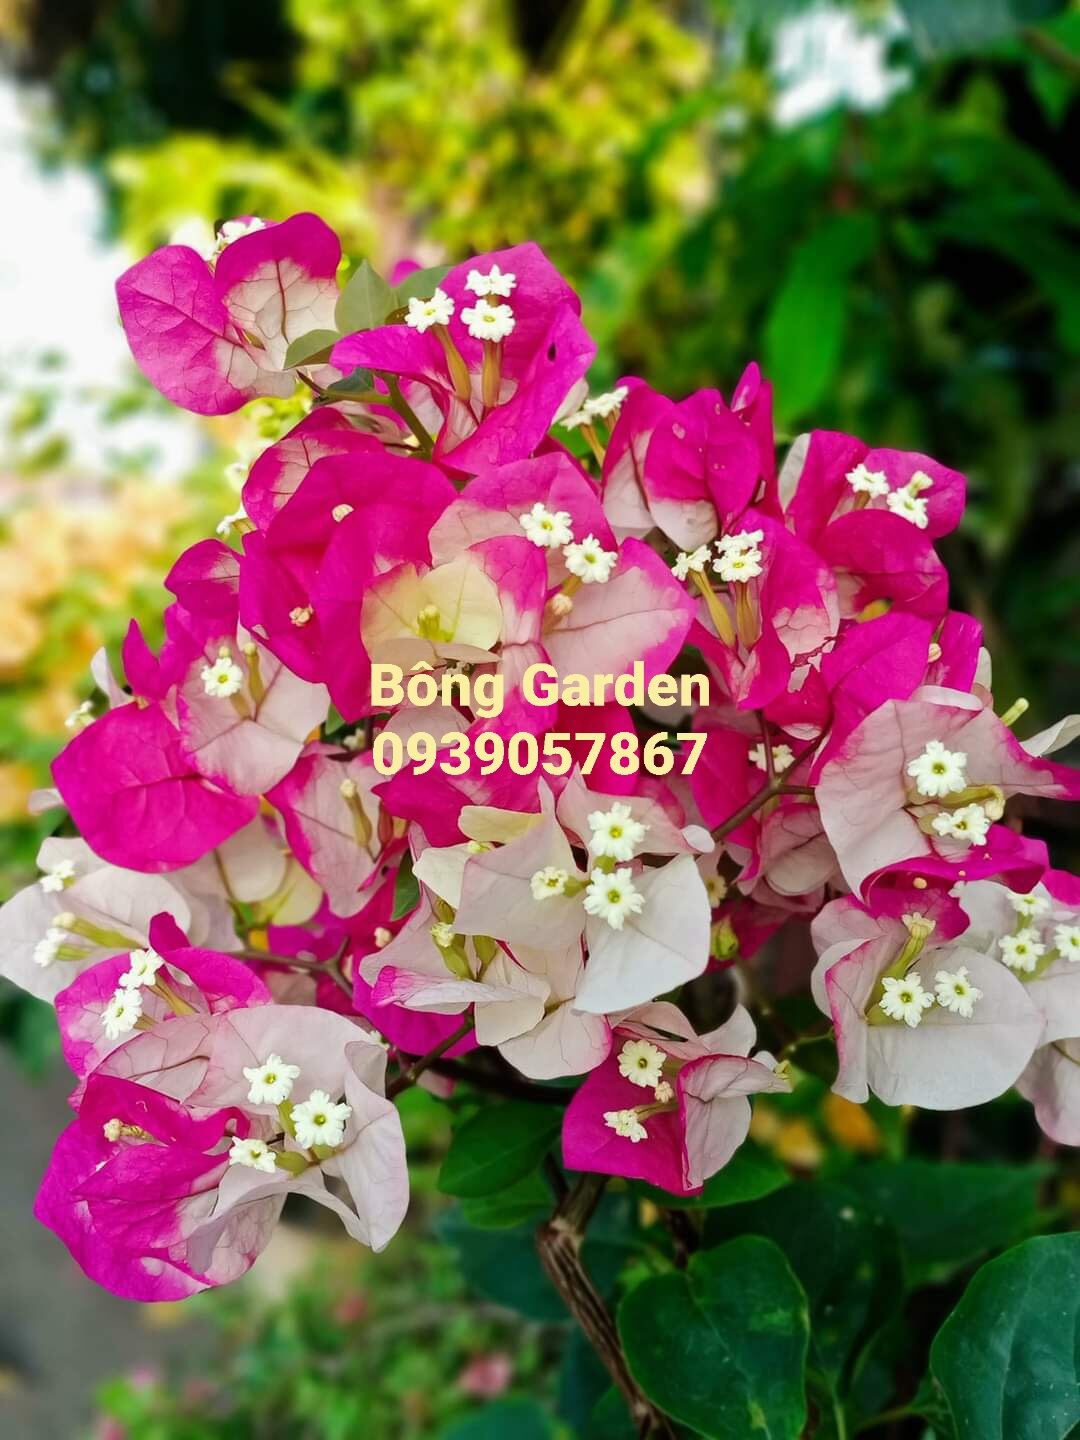 Bong Garden_ Cây giống hoa giấy đổi màu ấn độ, thay đổi từ 5 đến 7 màu tùy theo lứa hoa